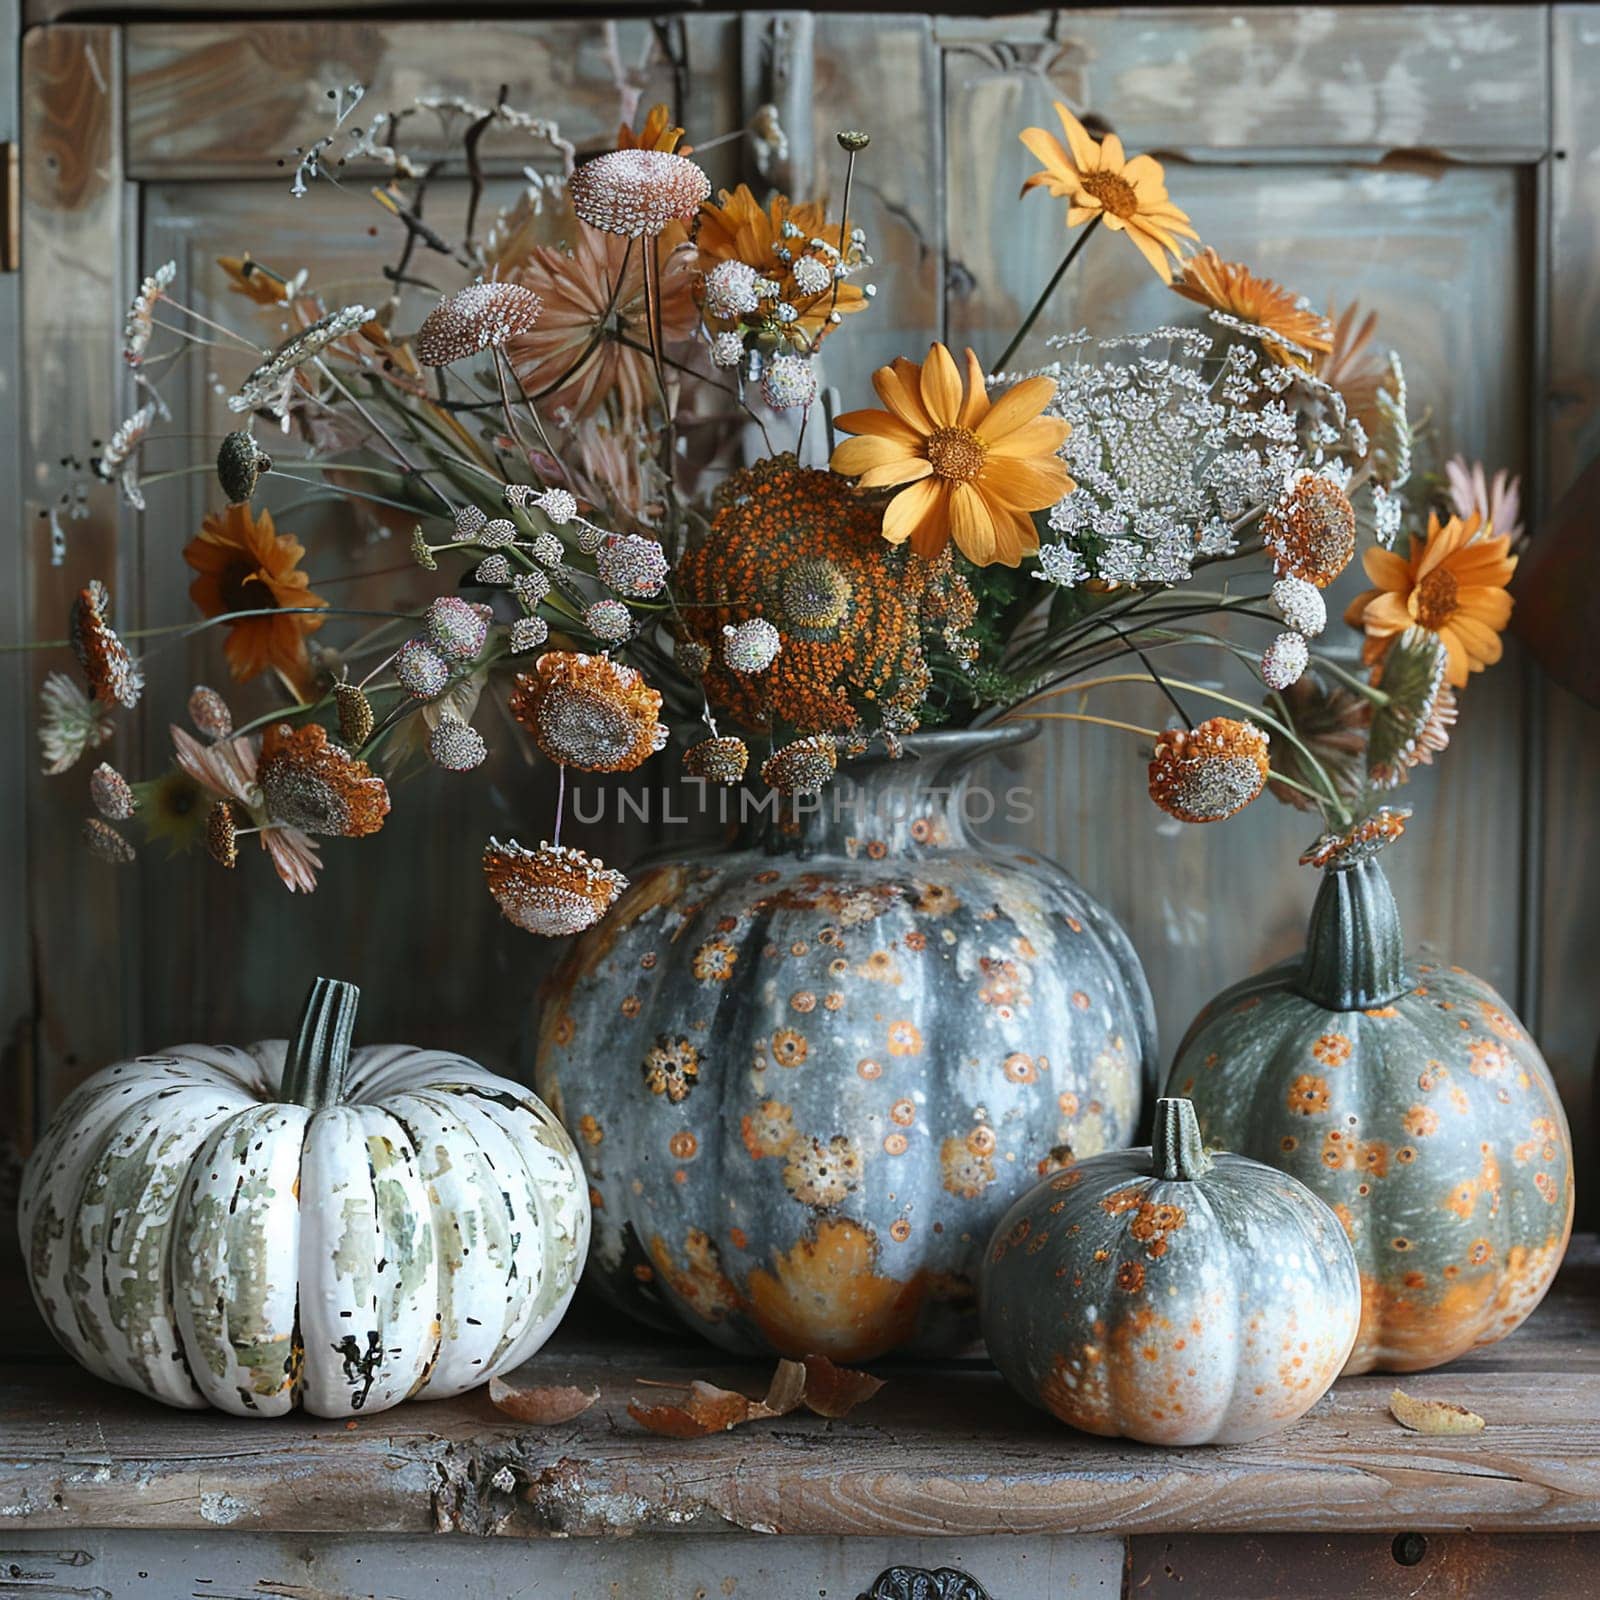 Autumn pumpkin arrangement on a rustic wooden table, evoking fall harvest.